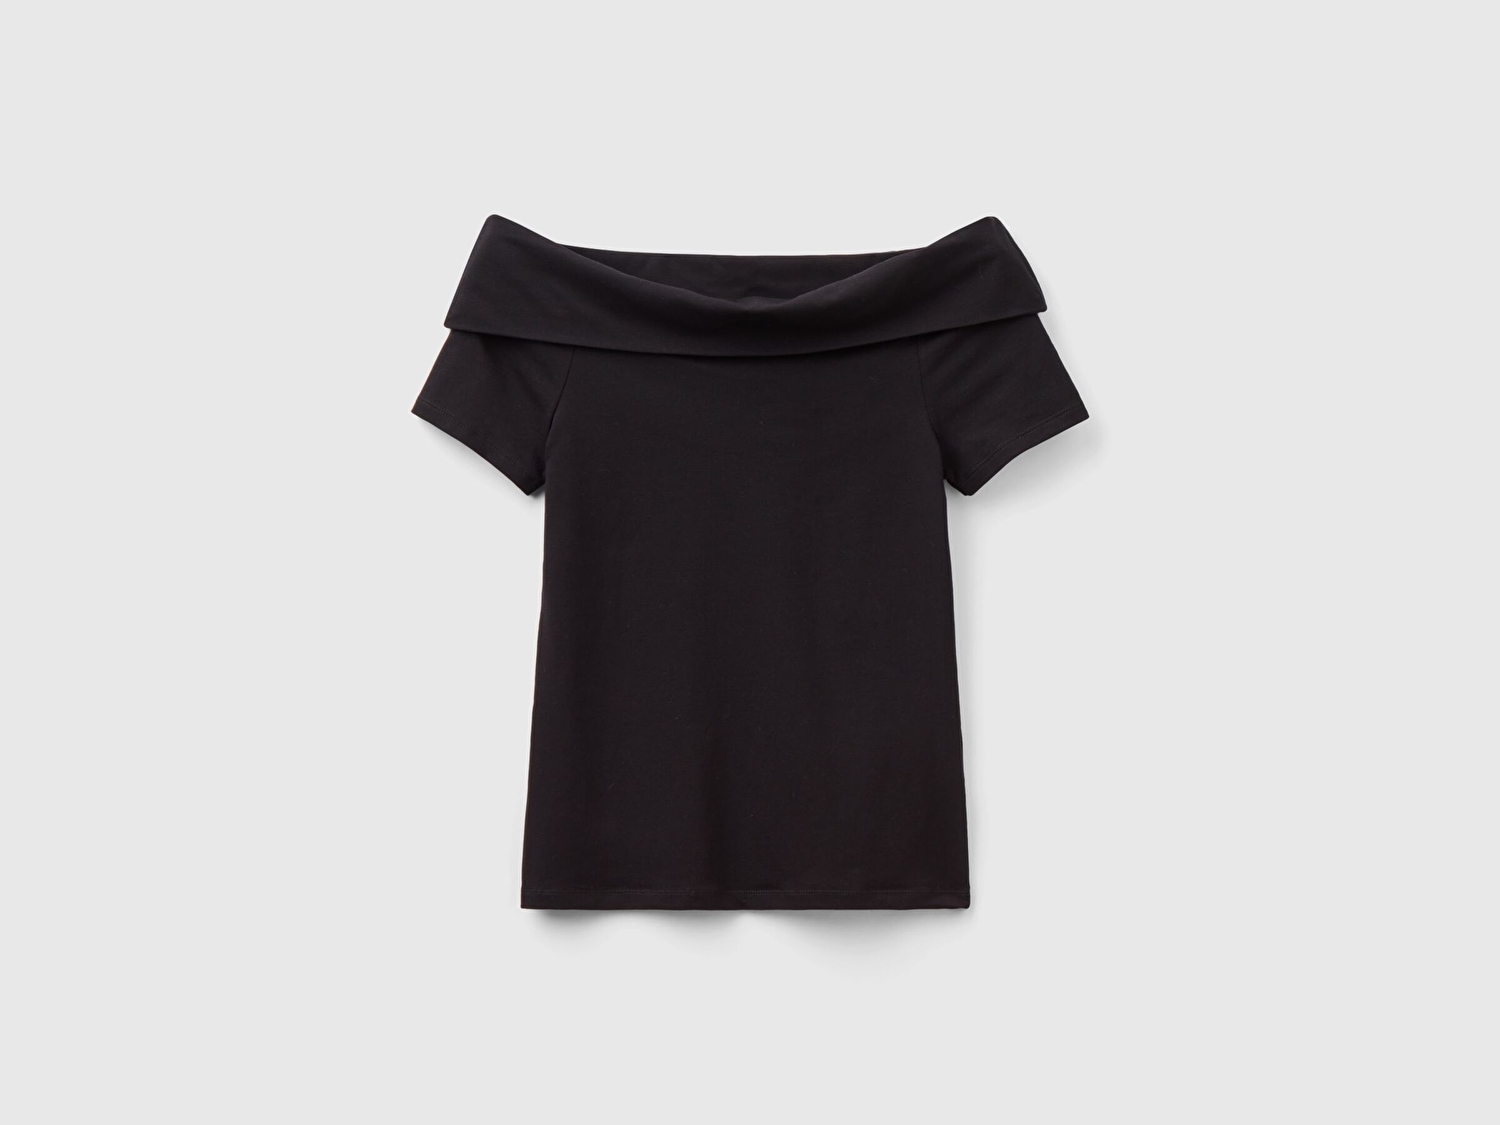 Benetton Kadın Siyah Pamuk Karışımlı Beli Daralan Kısa Kollu Şal Yaka T-shirt